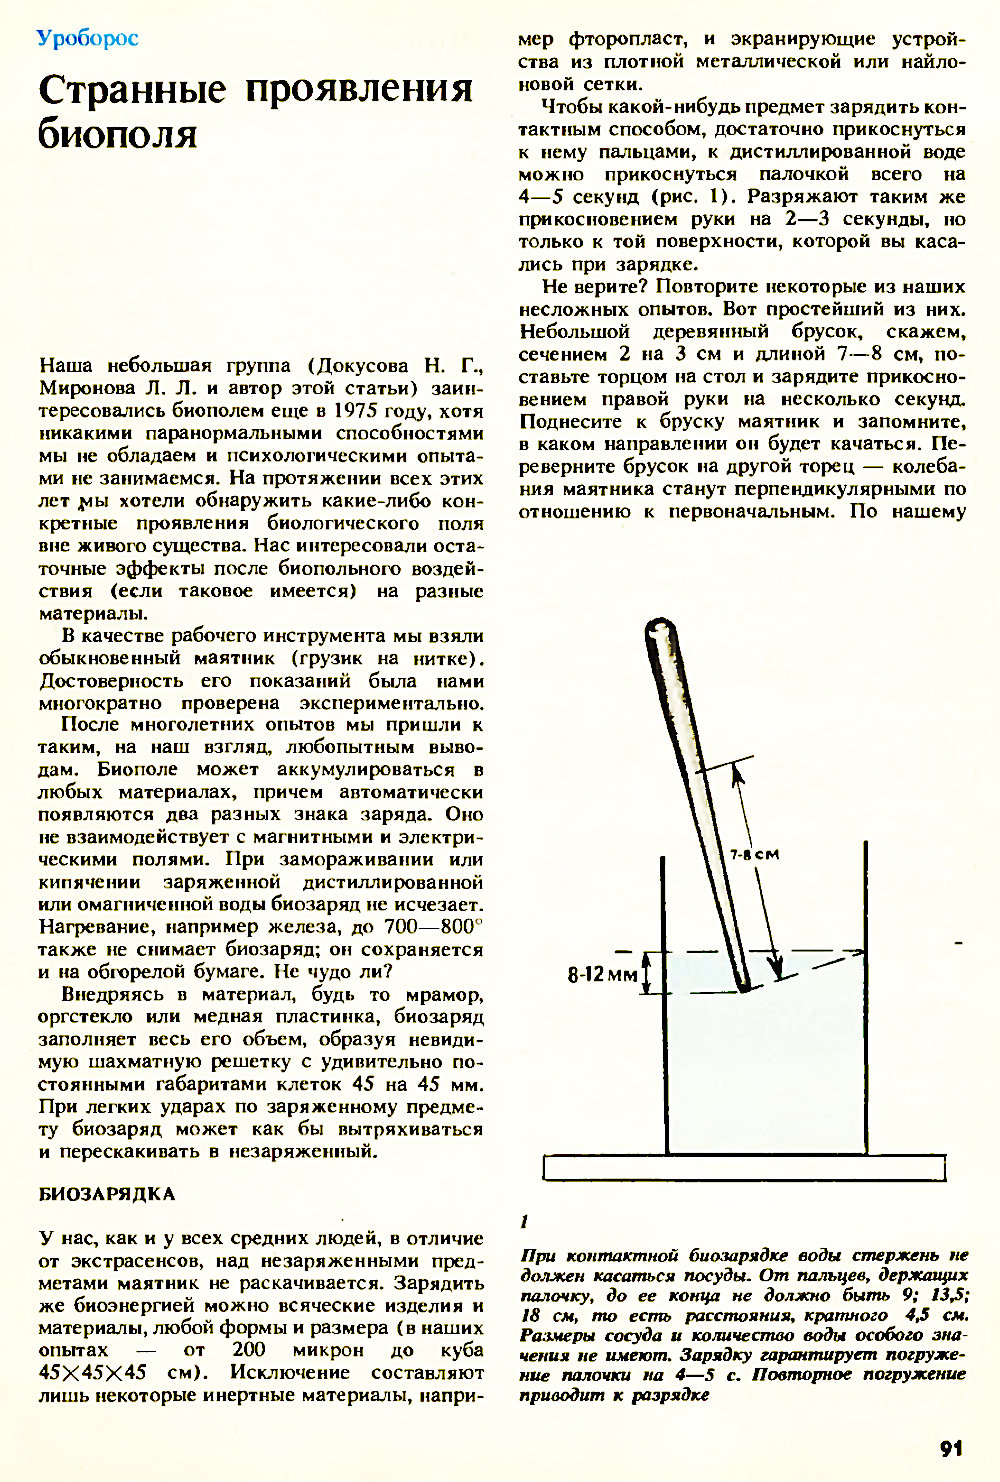 Странные проявления биополя. Н. Адырхаев. Химия и жизнь, 1990, №11, с.91-94. Фотокопия №1